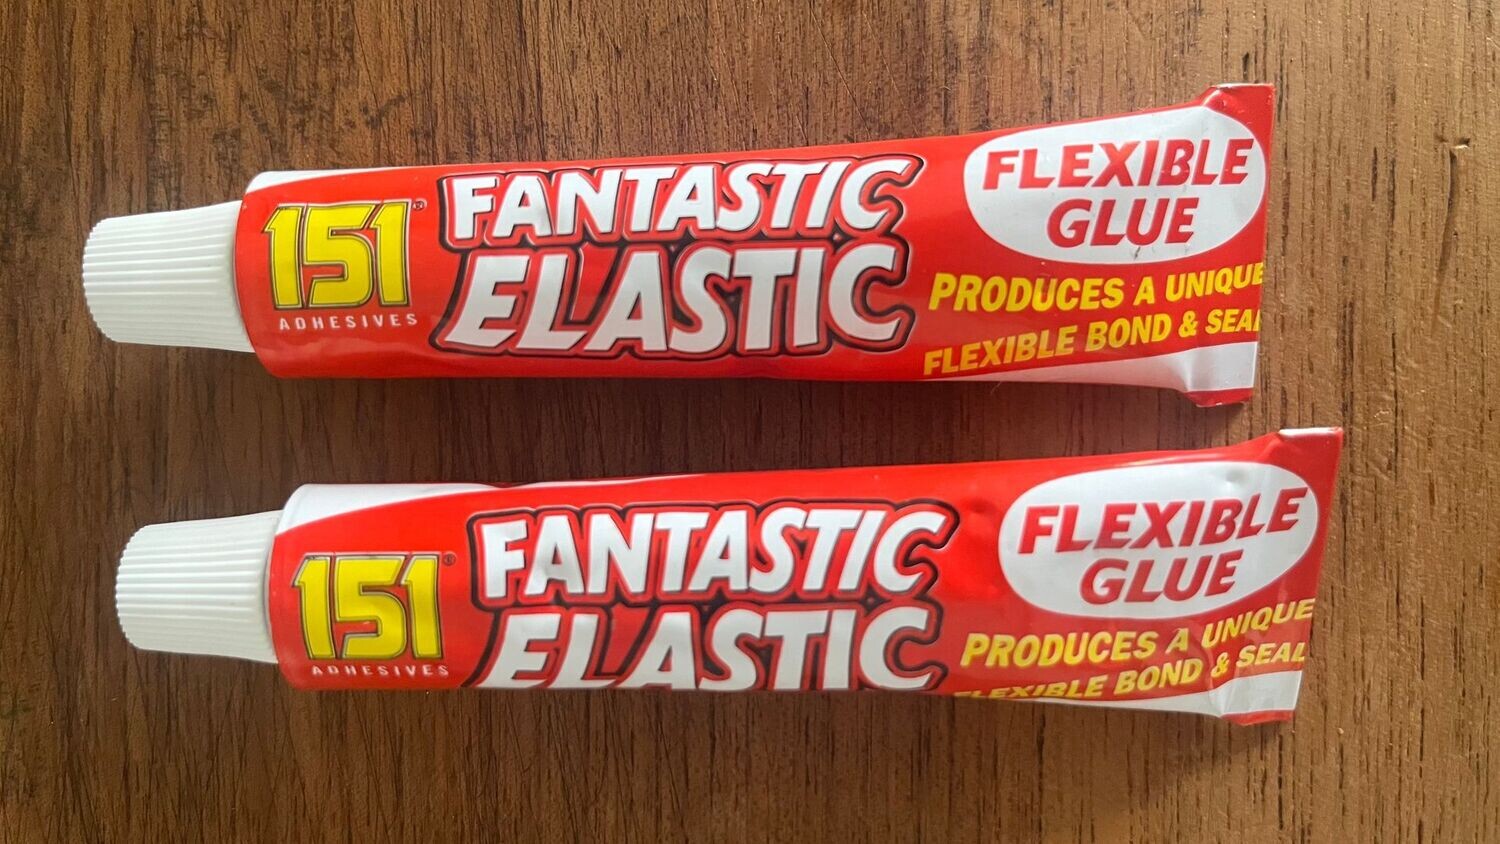 Fantastic Elastic Glue x 2